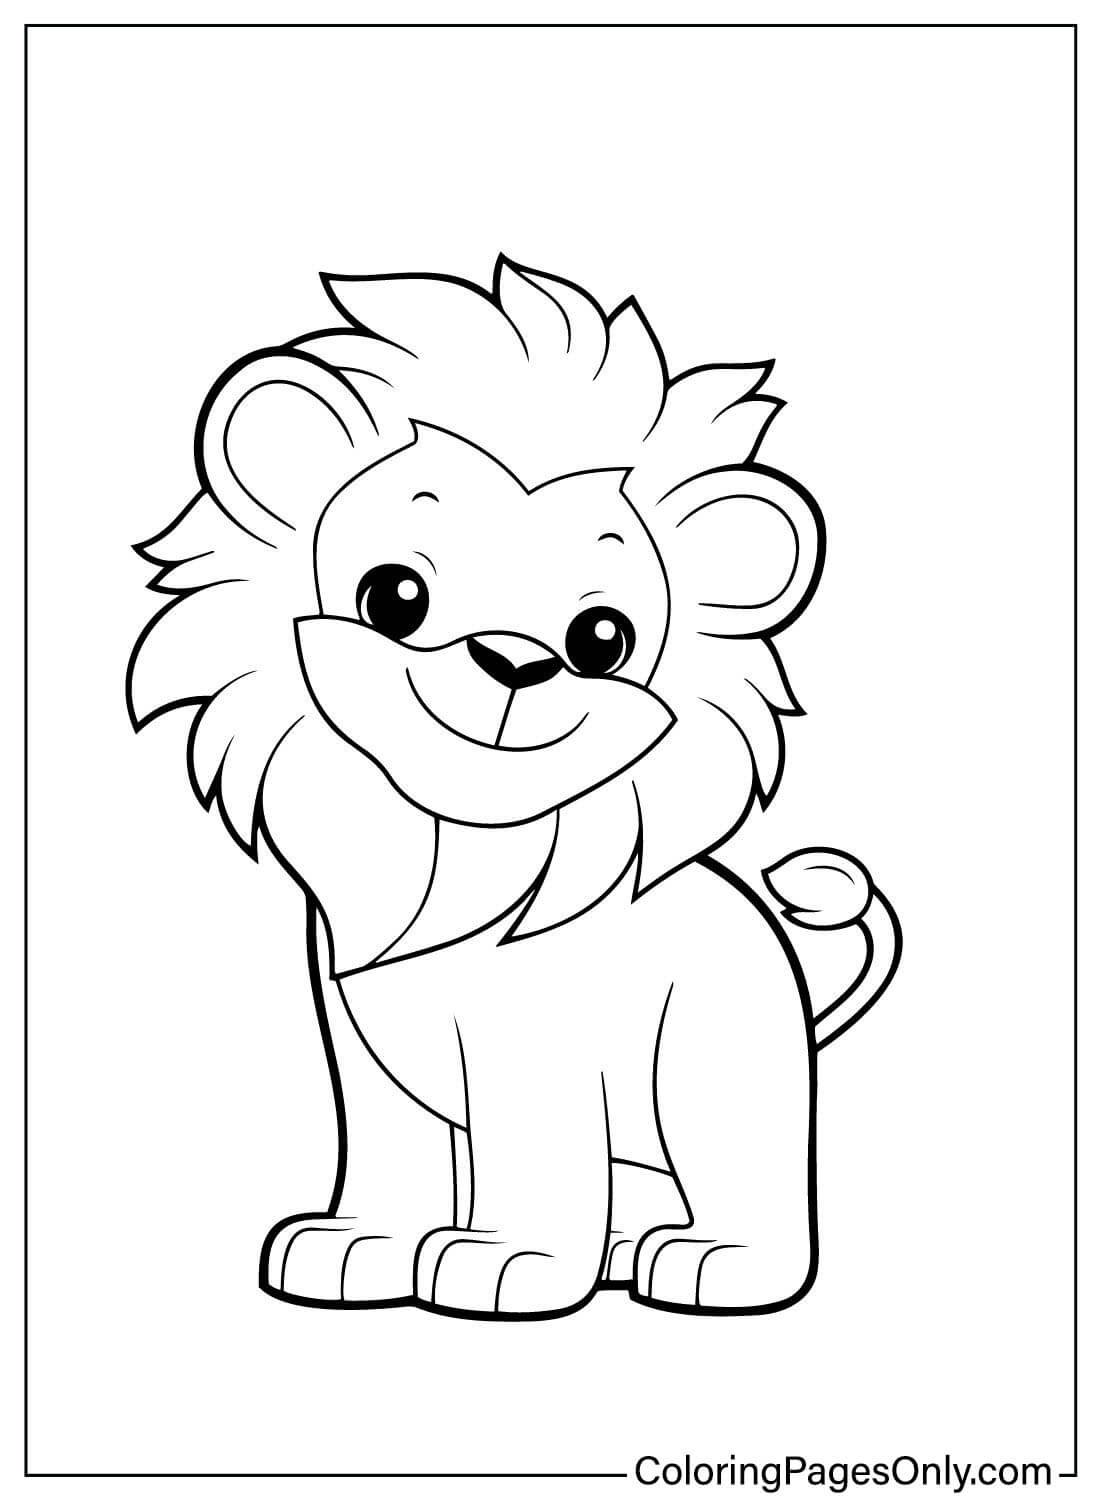 Página para colorear de León de León